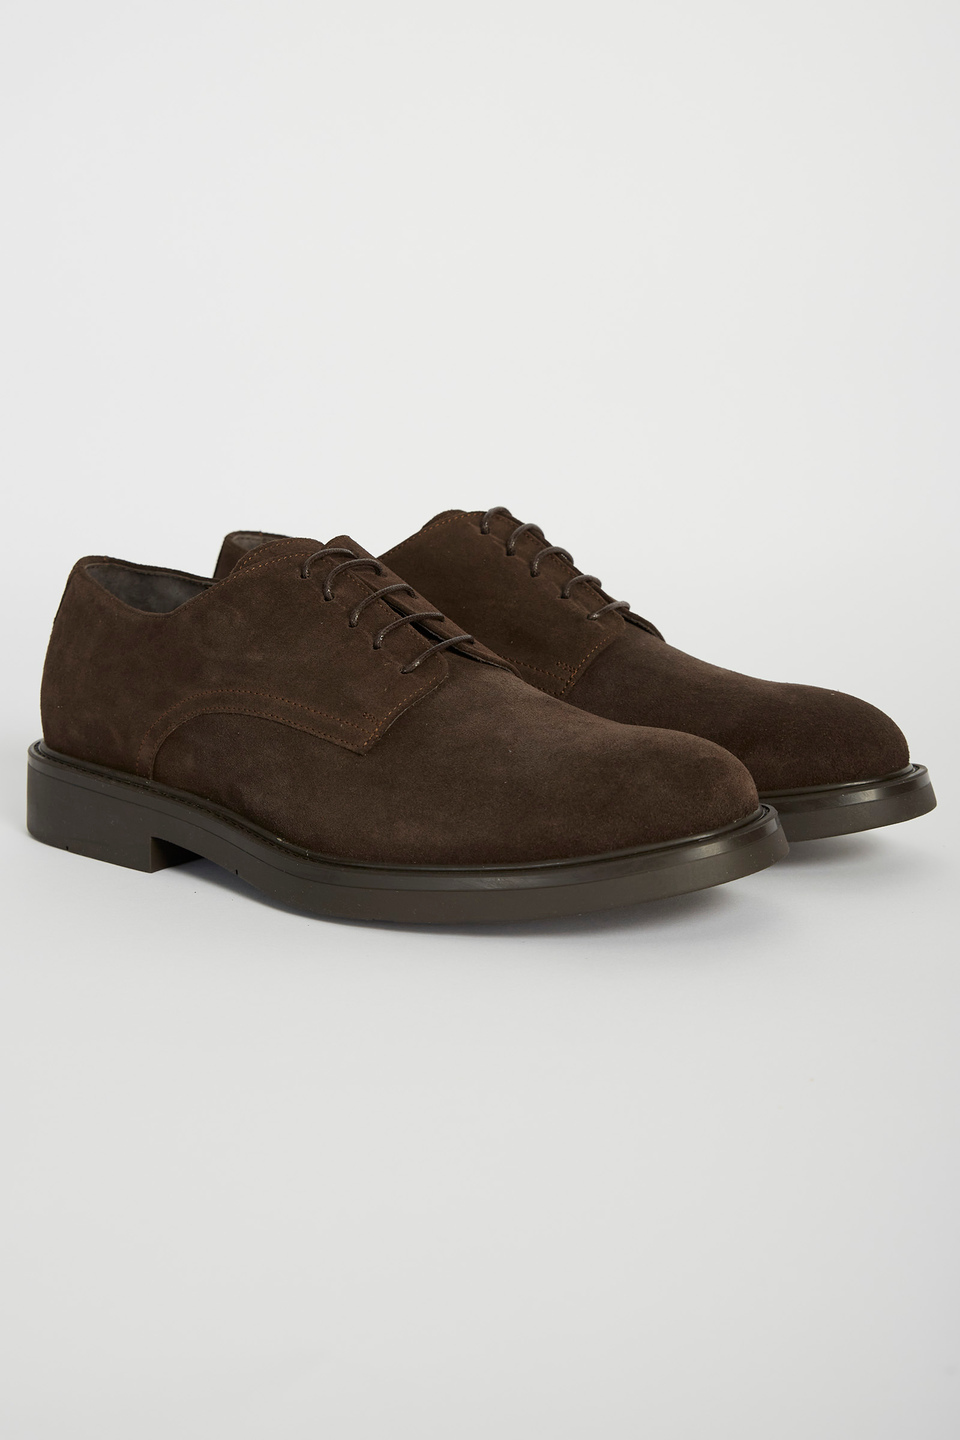 Classic leather shoe | La Martina - Official Online Shop